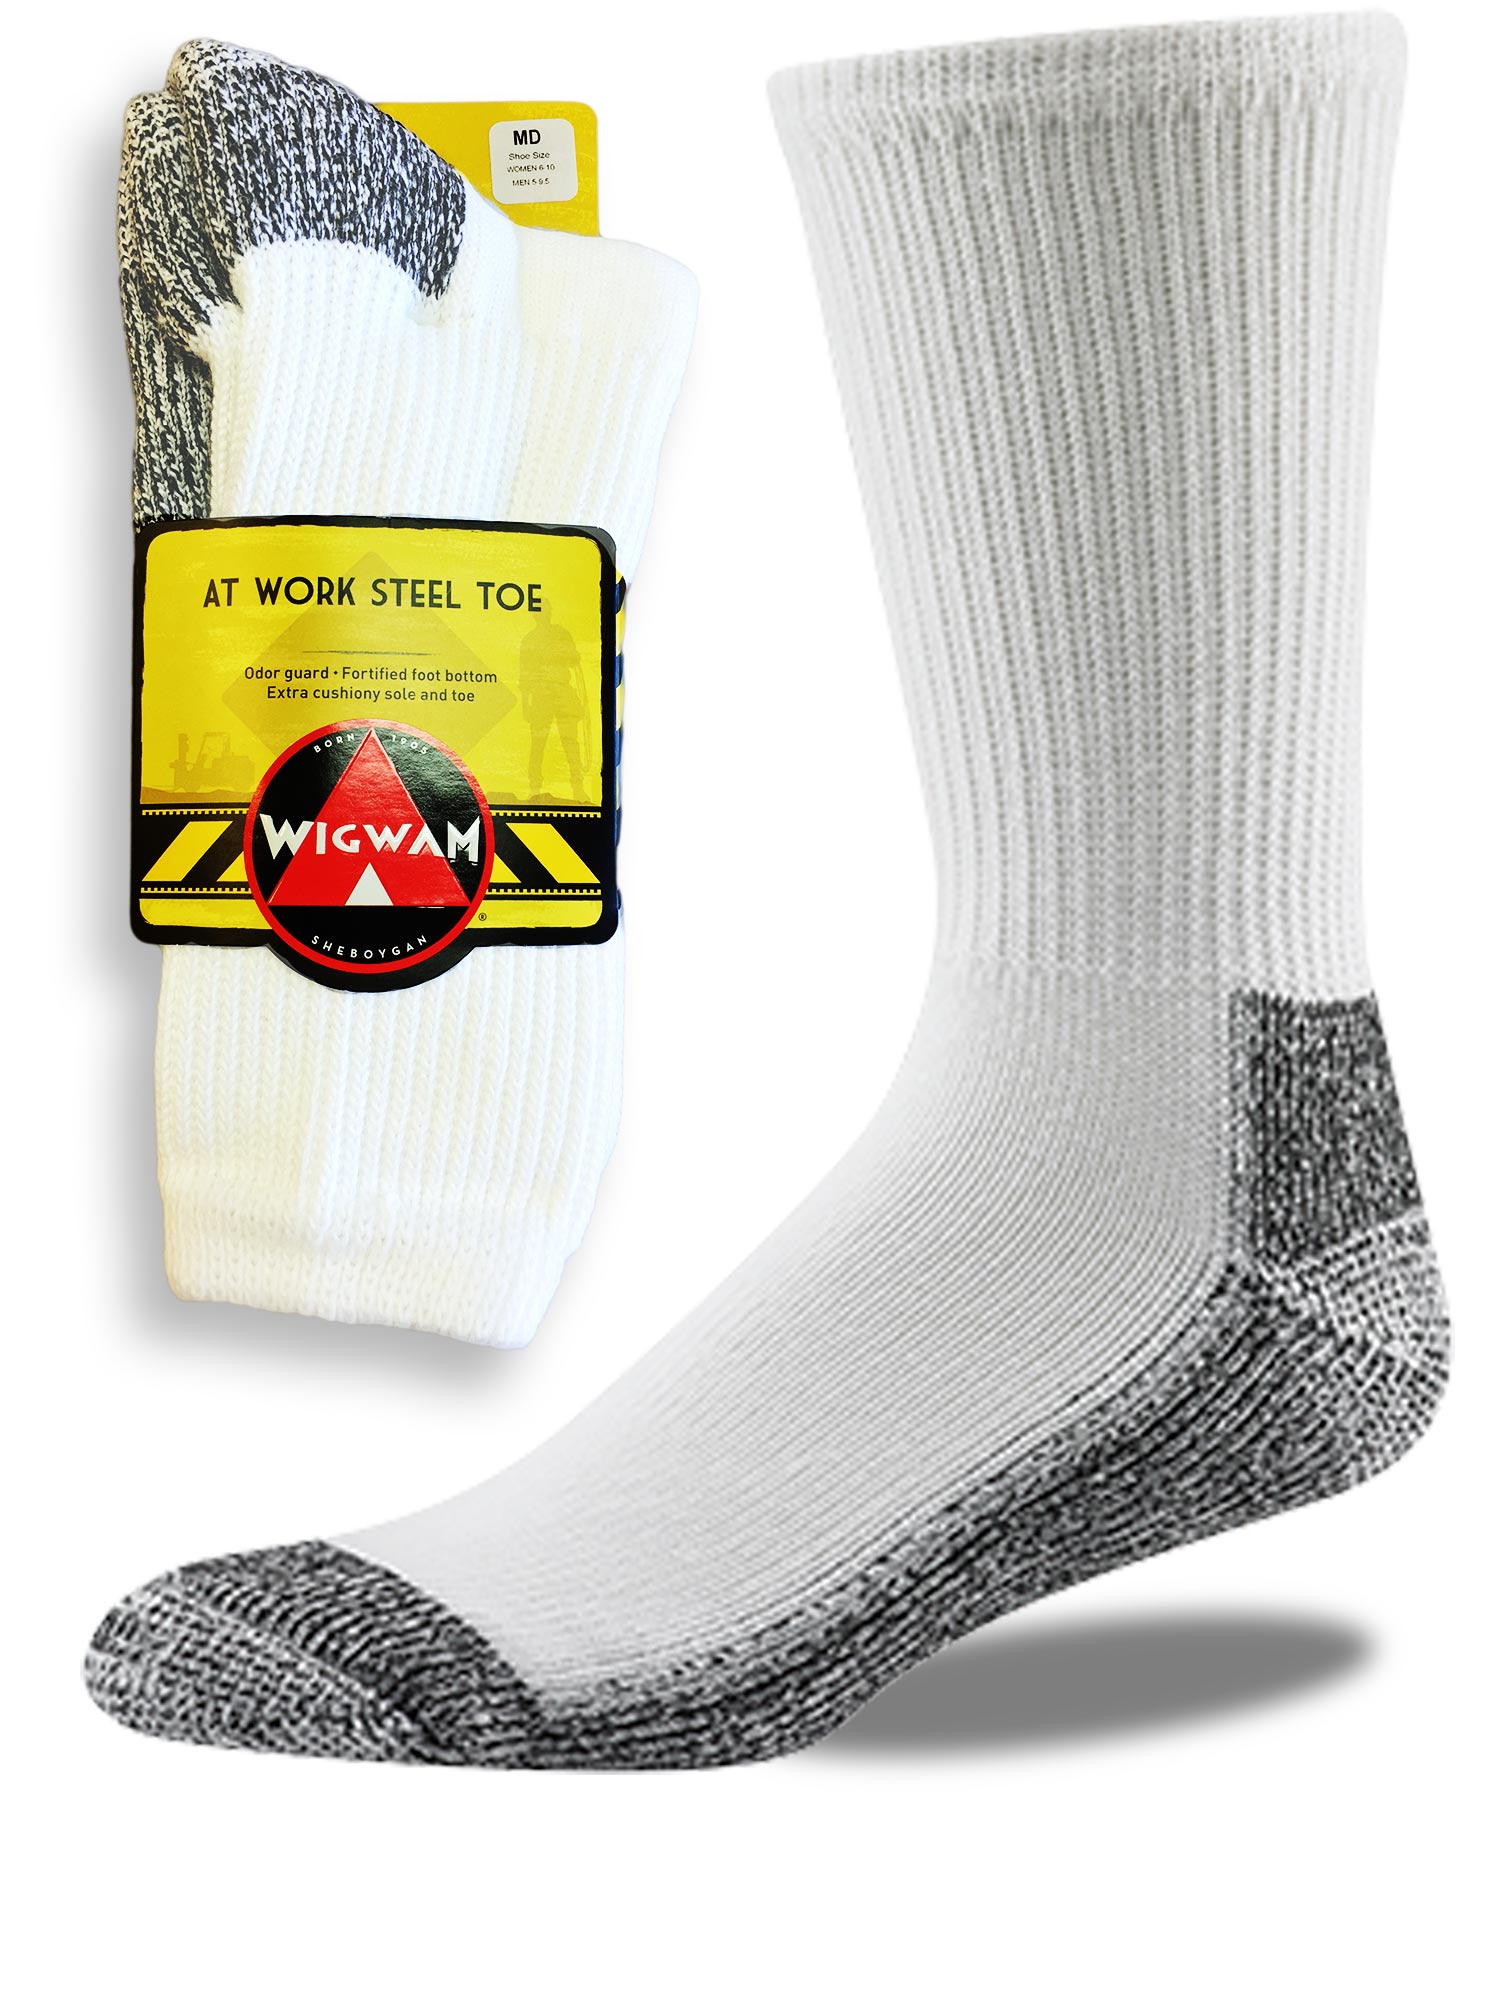 women's socks for steel toe boots